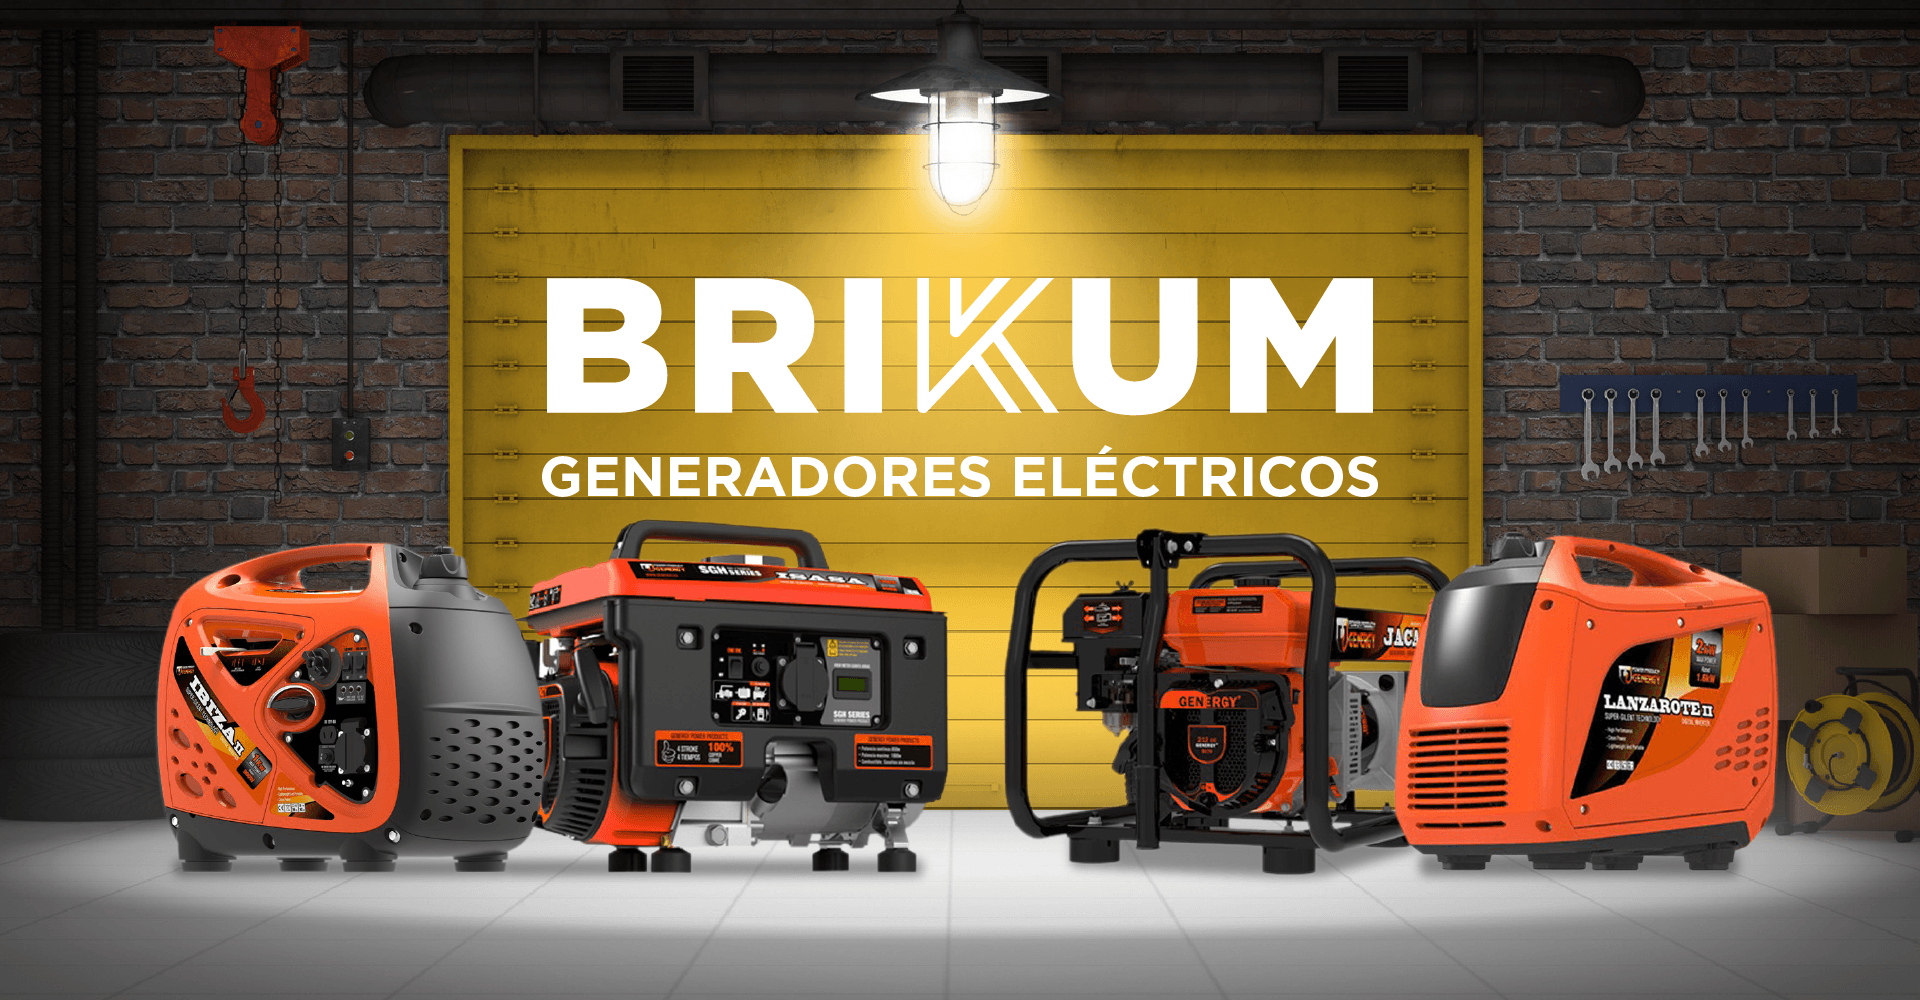 Tipos de generadores eléctricos y usos - Blog de bricolaje - Brikum